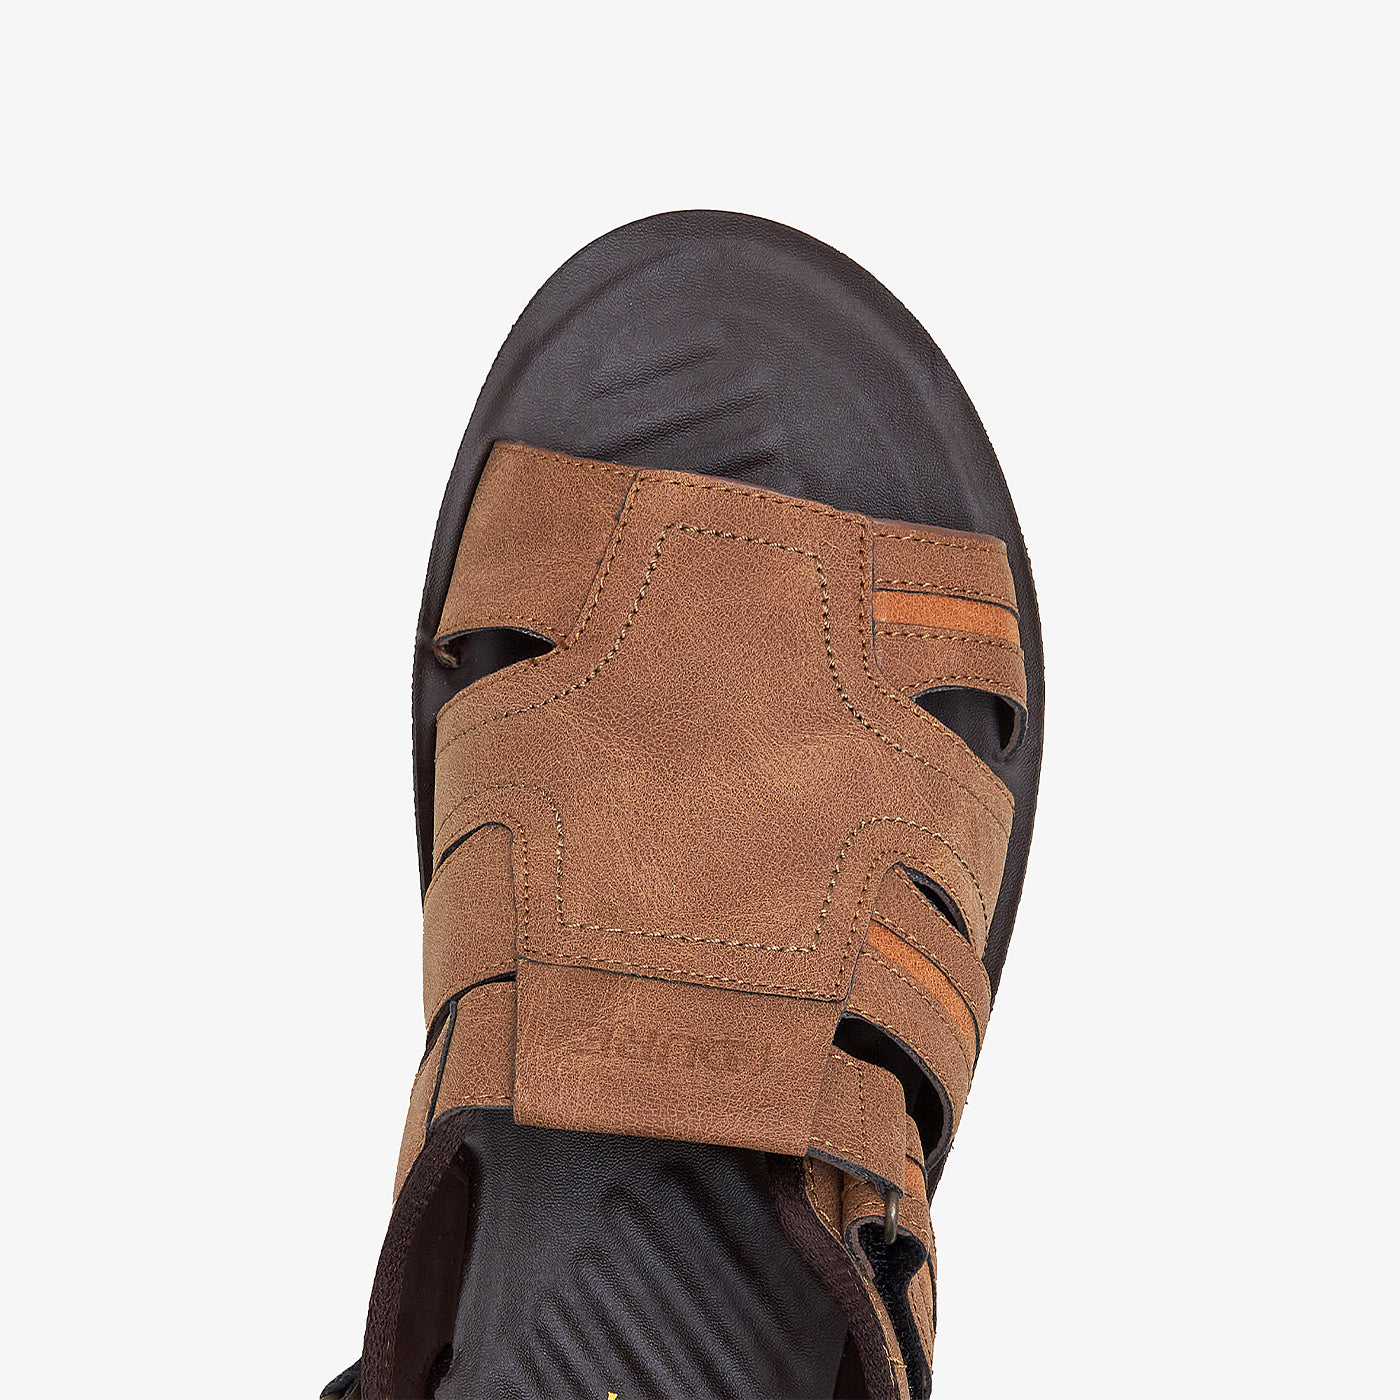 Men's Padded Sandals